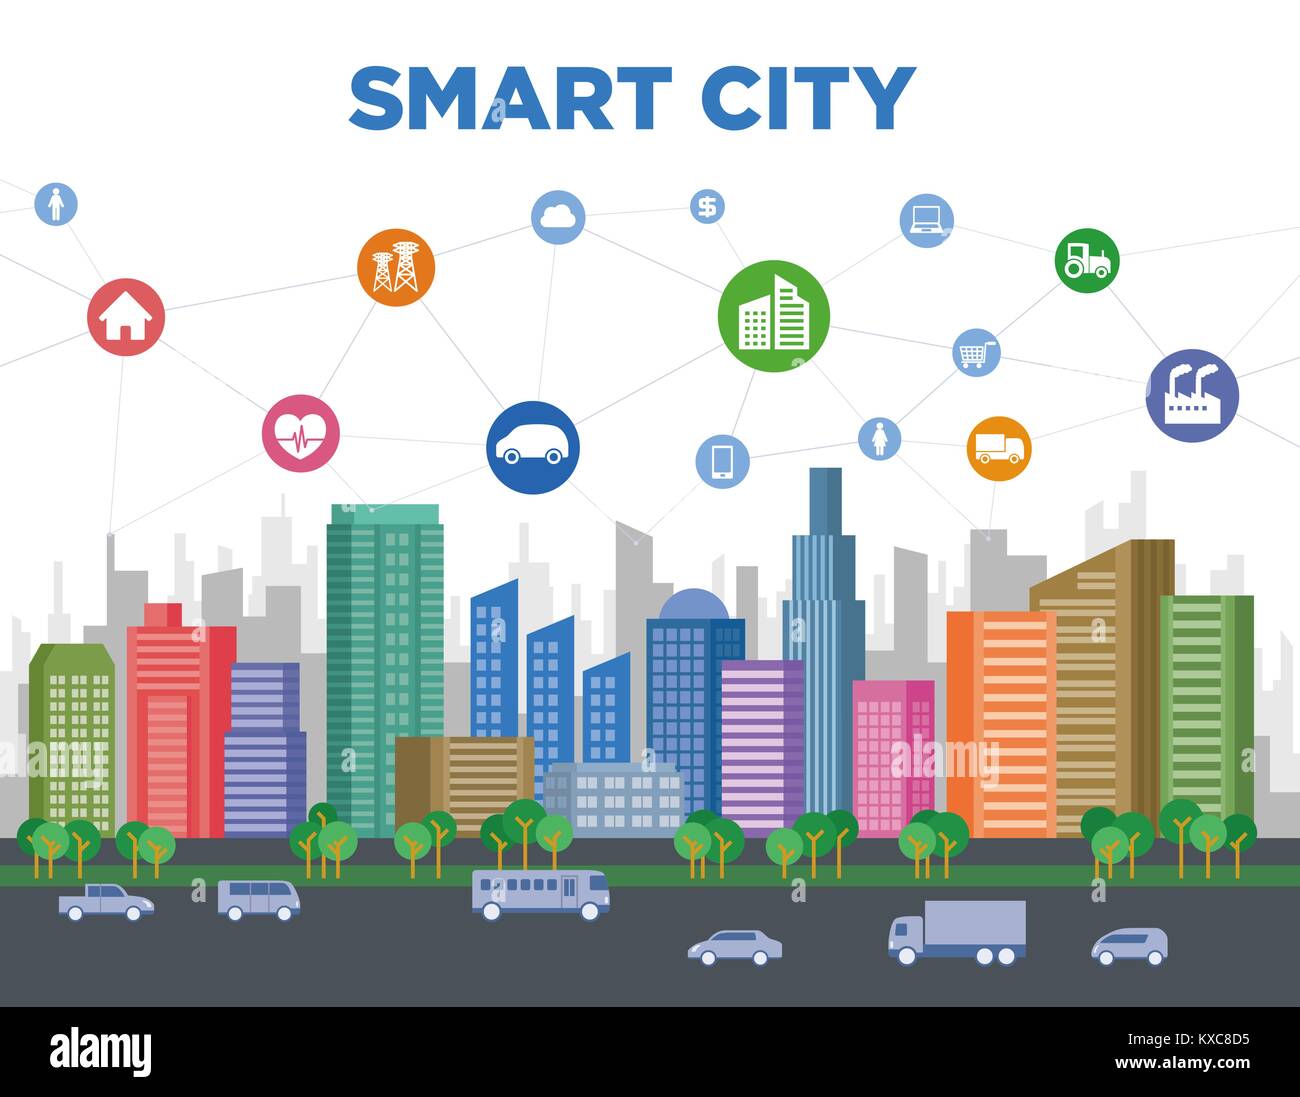 Ilustración del concepto smart city, colorido edificio urbano y diversos iconos, tecnología smart grid, IoT (Internet de las cosas). Ilustración del Vector